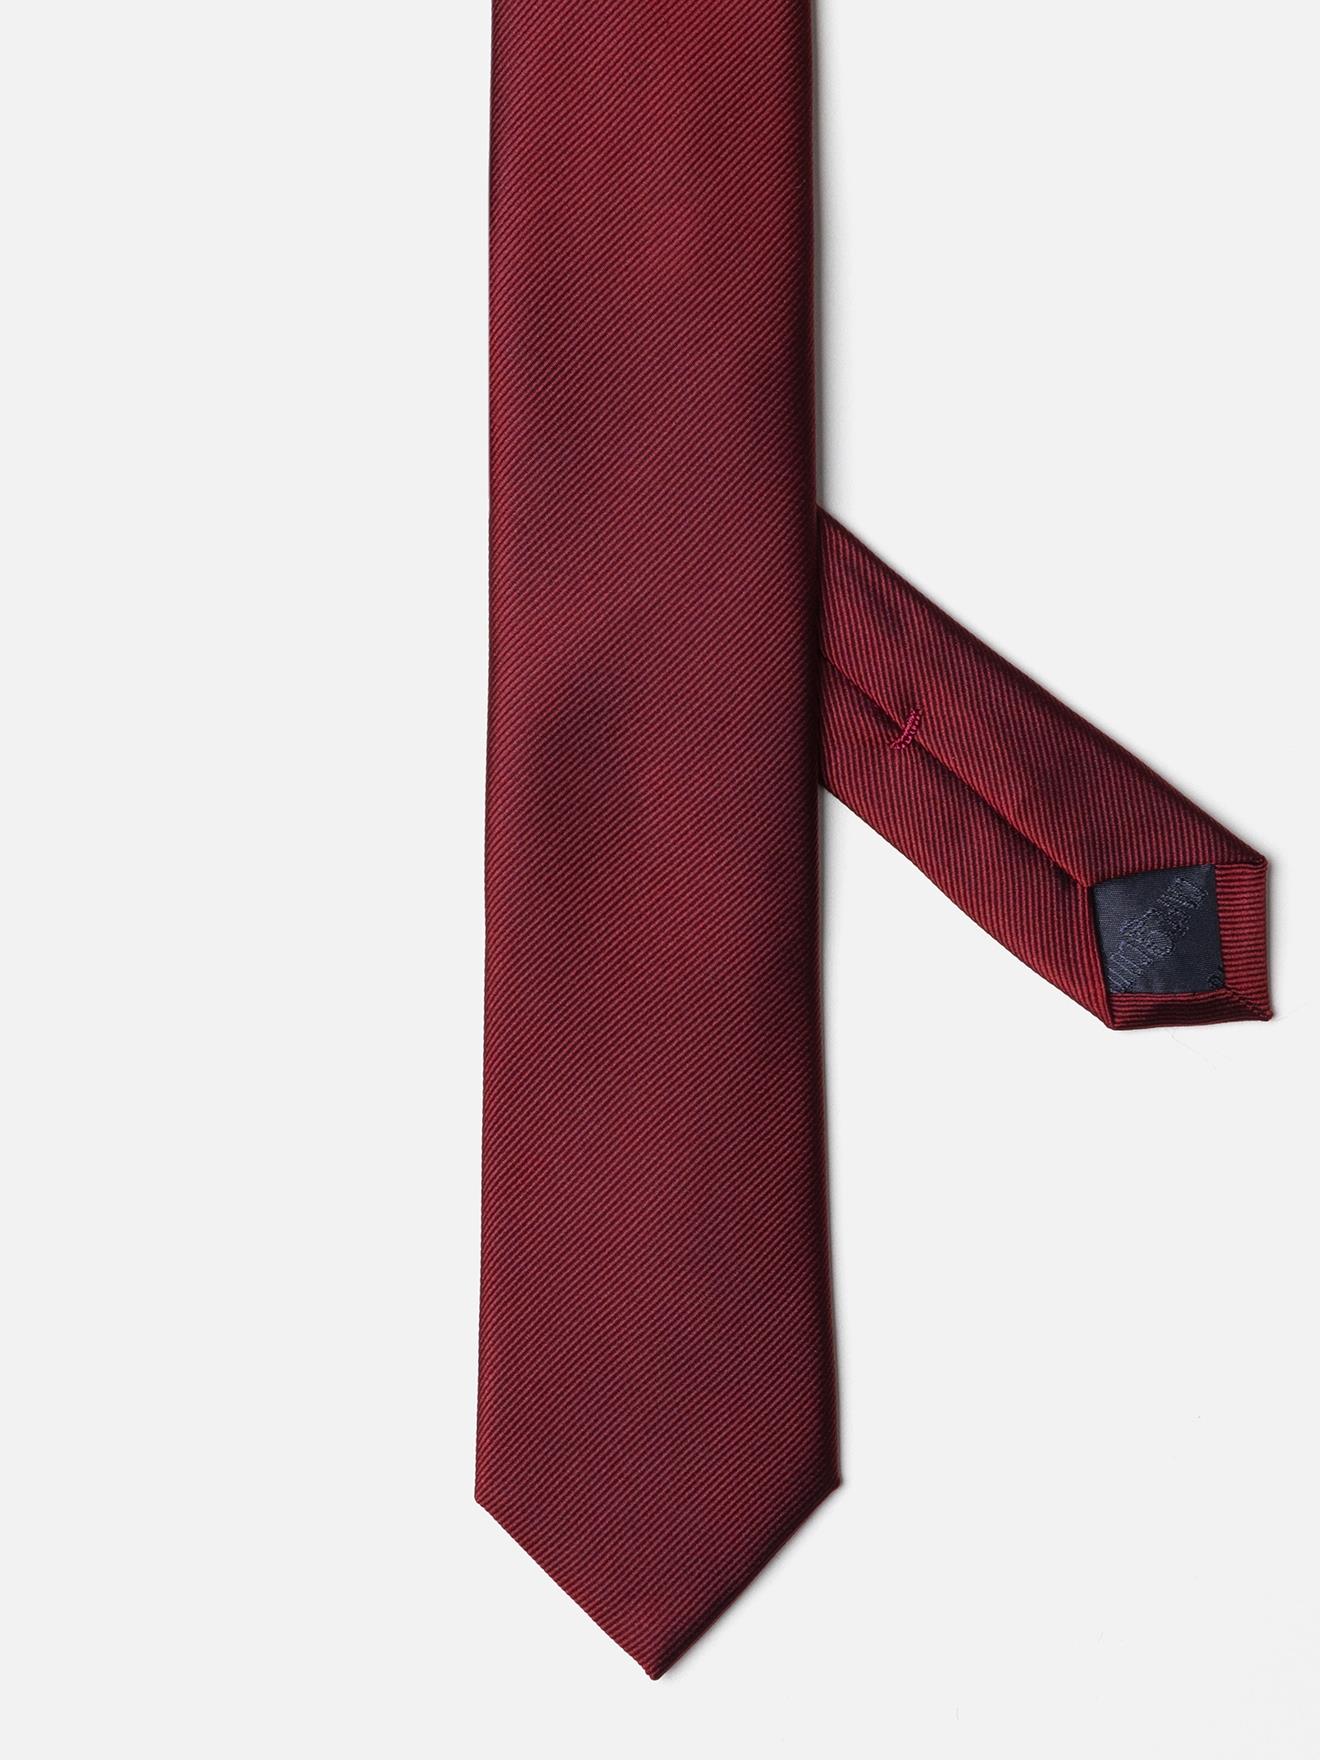 Cravate slim en soie sergée rouge